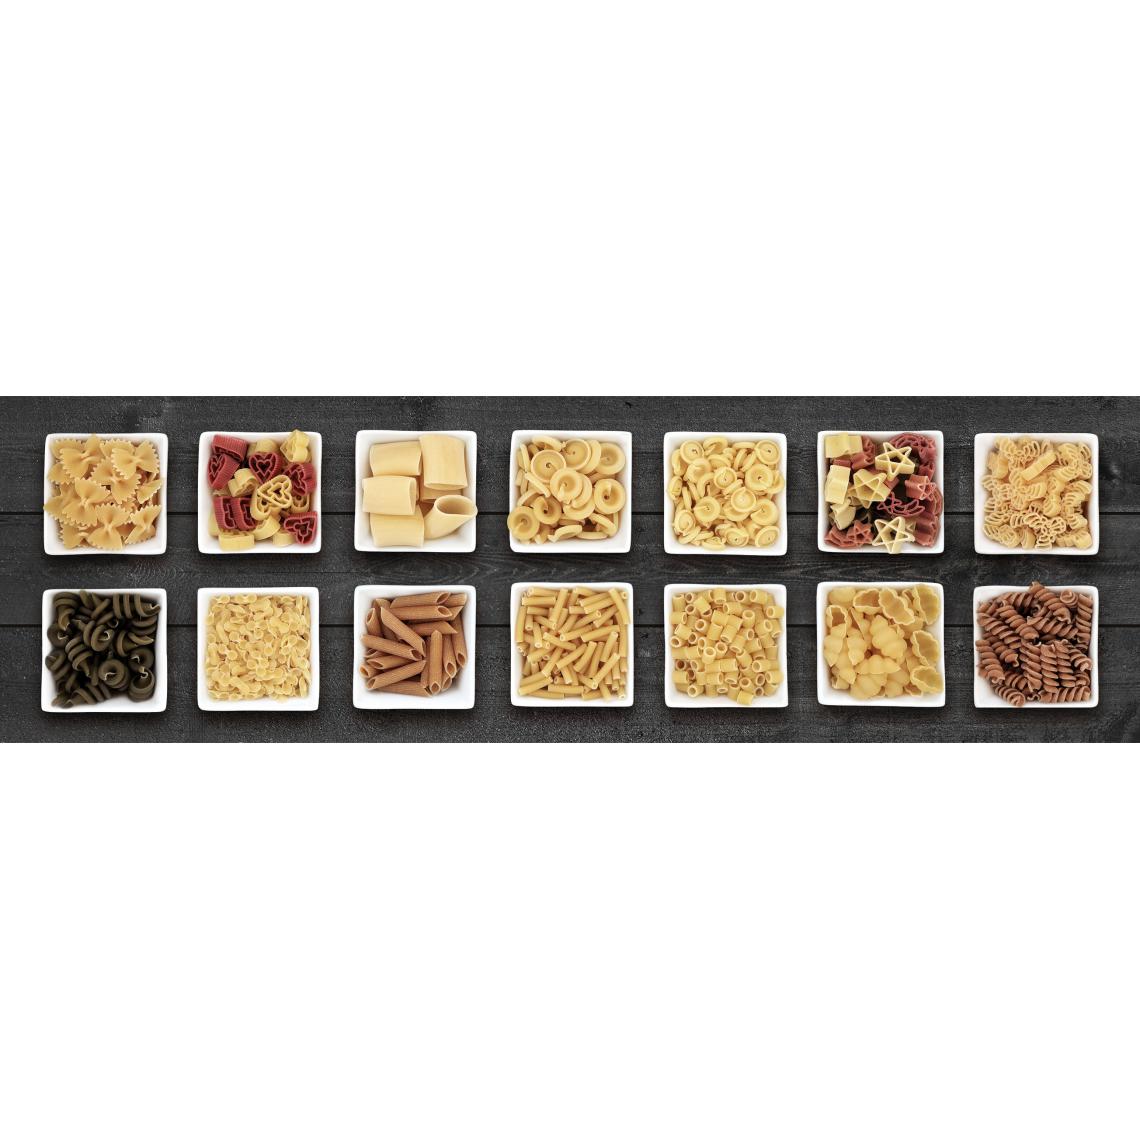 Alter - Tapis de cuisine, 100% Made in Italy, Tapis antitache avec impression numérique, Tapis antidérapant et lavable, Modèle Hsipaw, cm 280x52 - Tapis